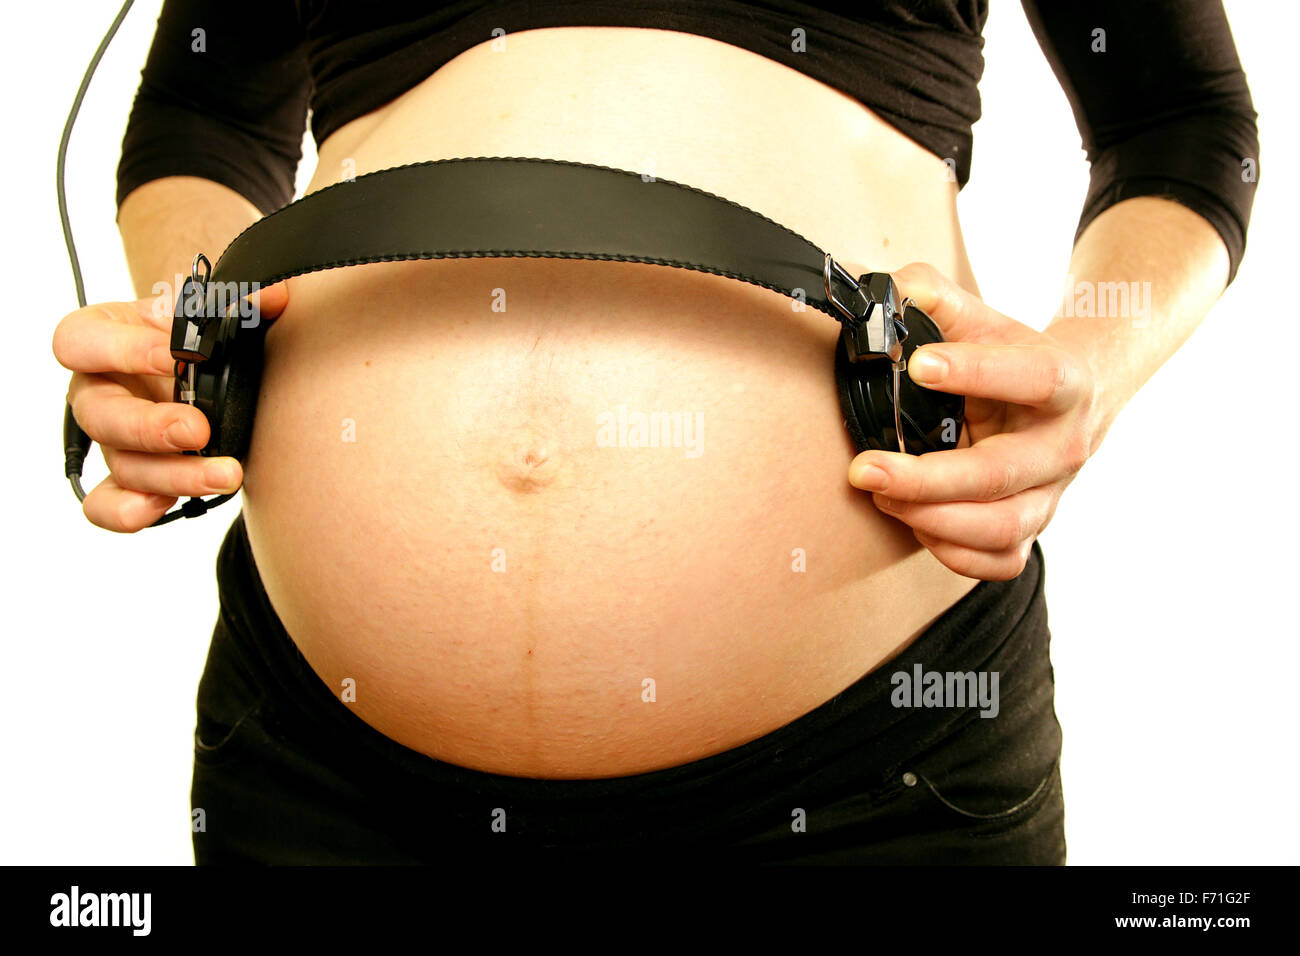 Les bras sur le ventre du ventre de maman enceinte holding écouteurs pour aimer la musique bébé fond blanc Banque D'Images